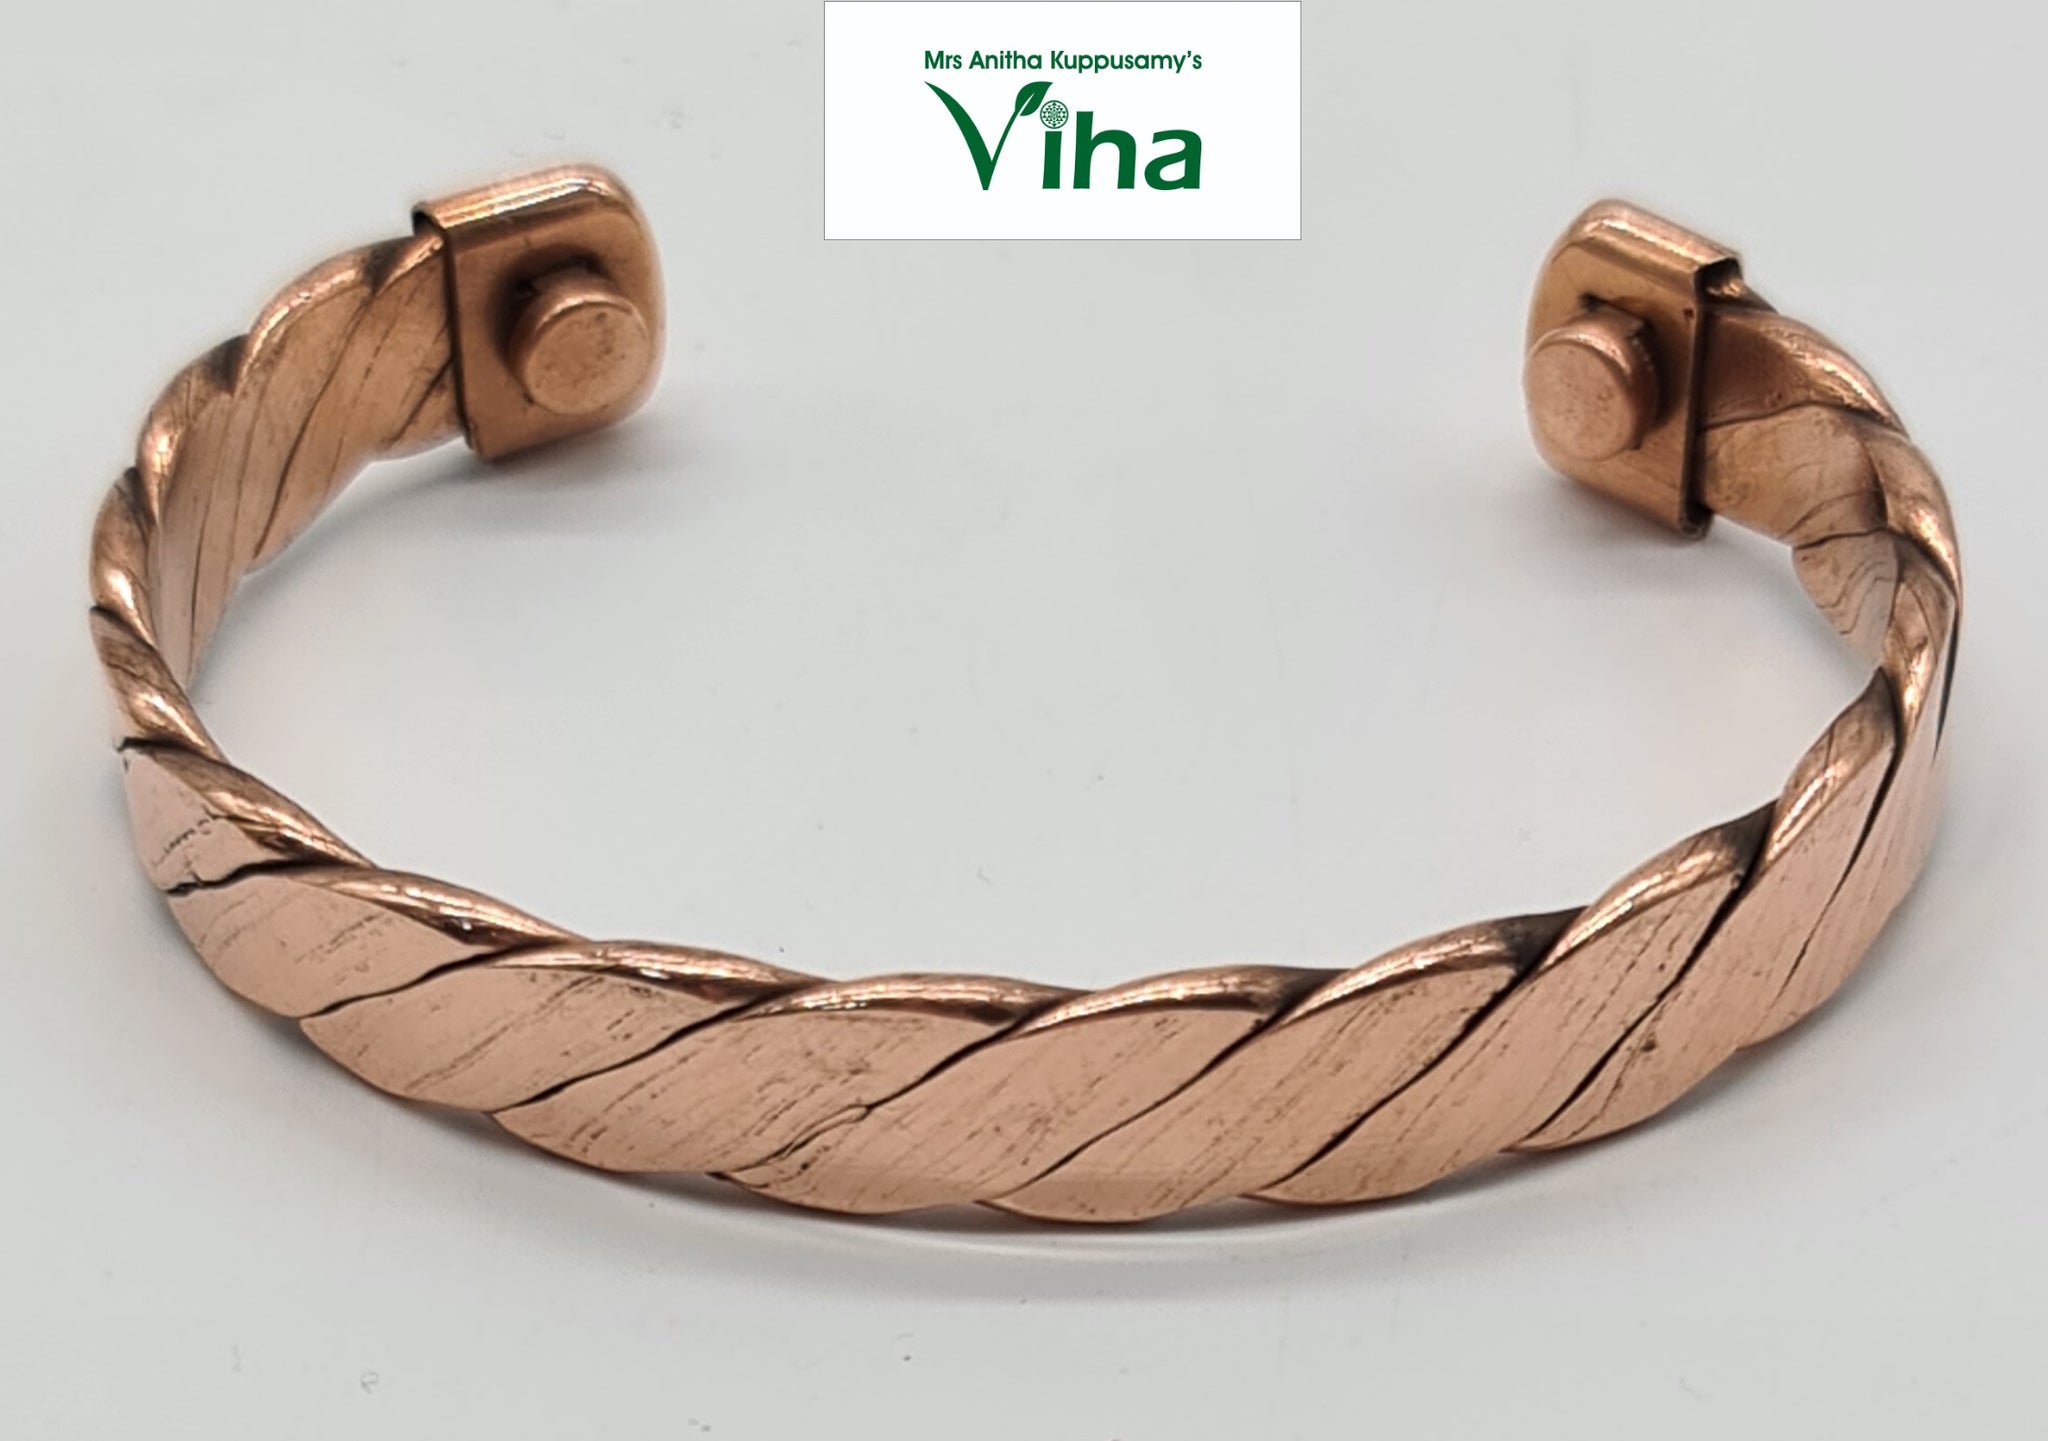 Adjustable Spiral Kada / Copper Bracelet Pack Of 3 pc